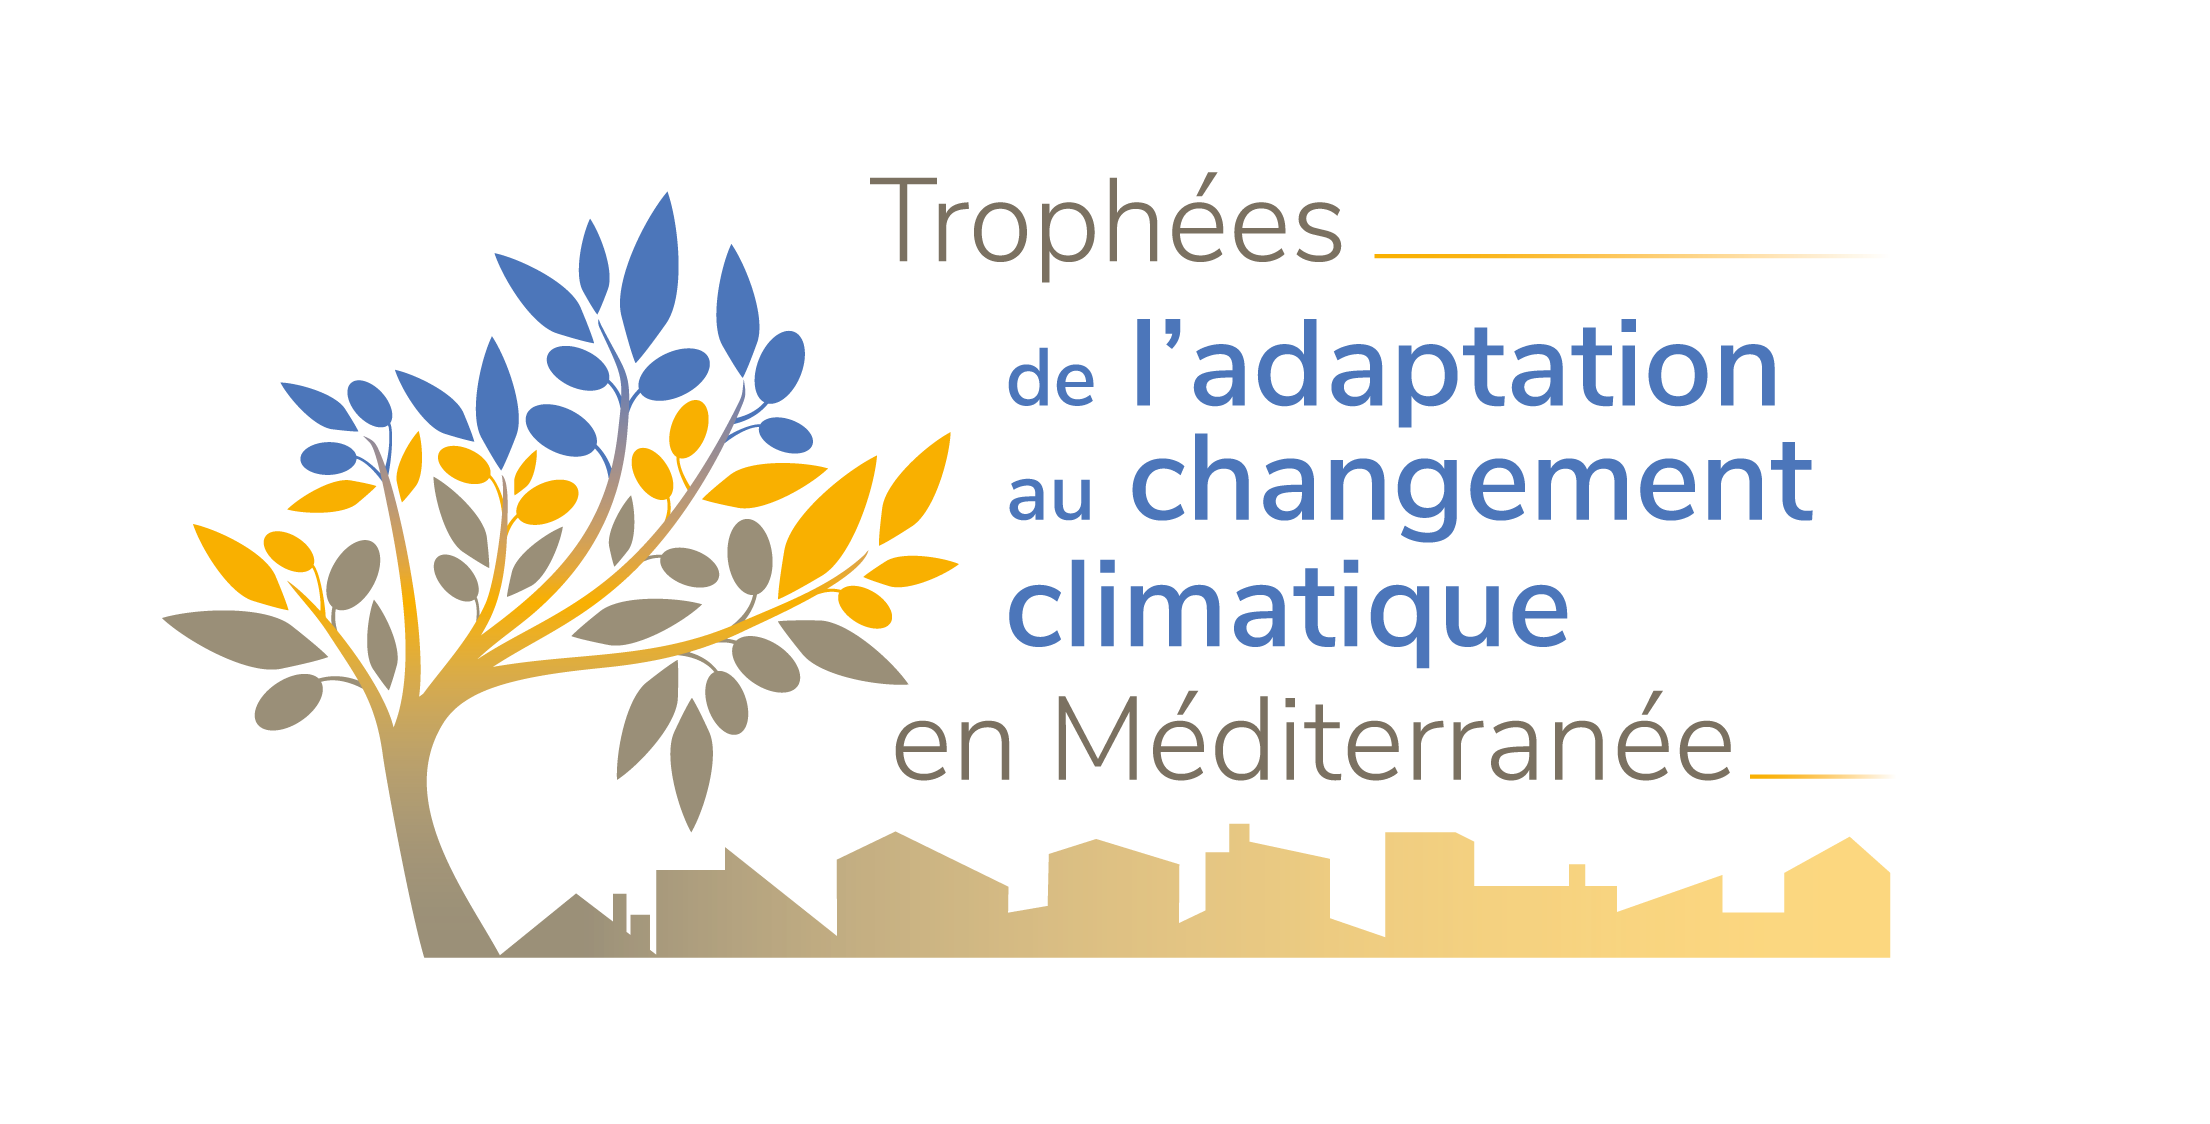 Trophées de l'adaptation au changement climatique en Méditerranée